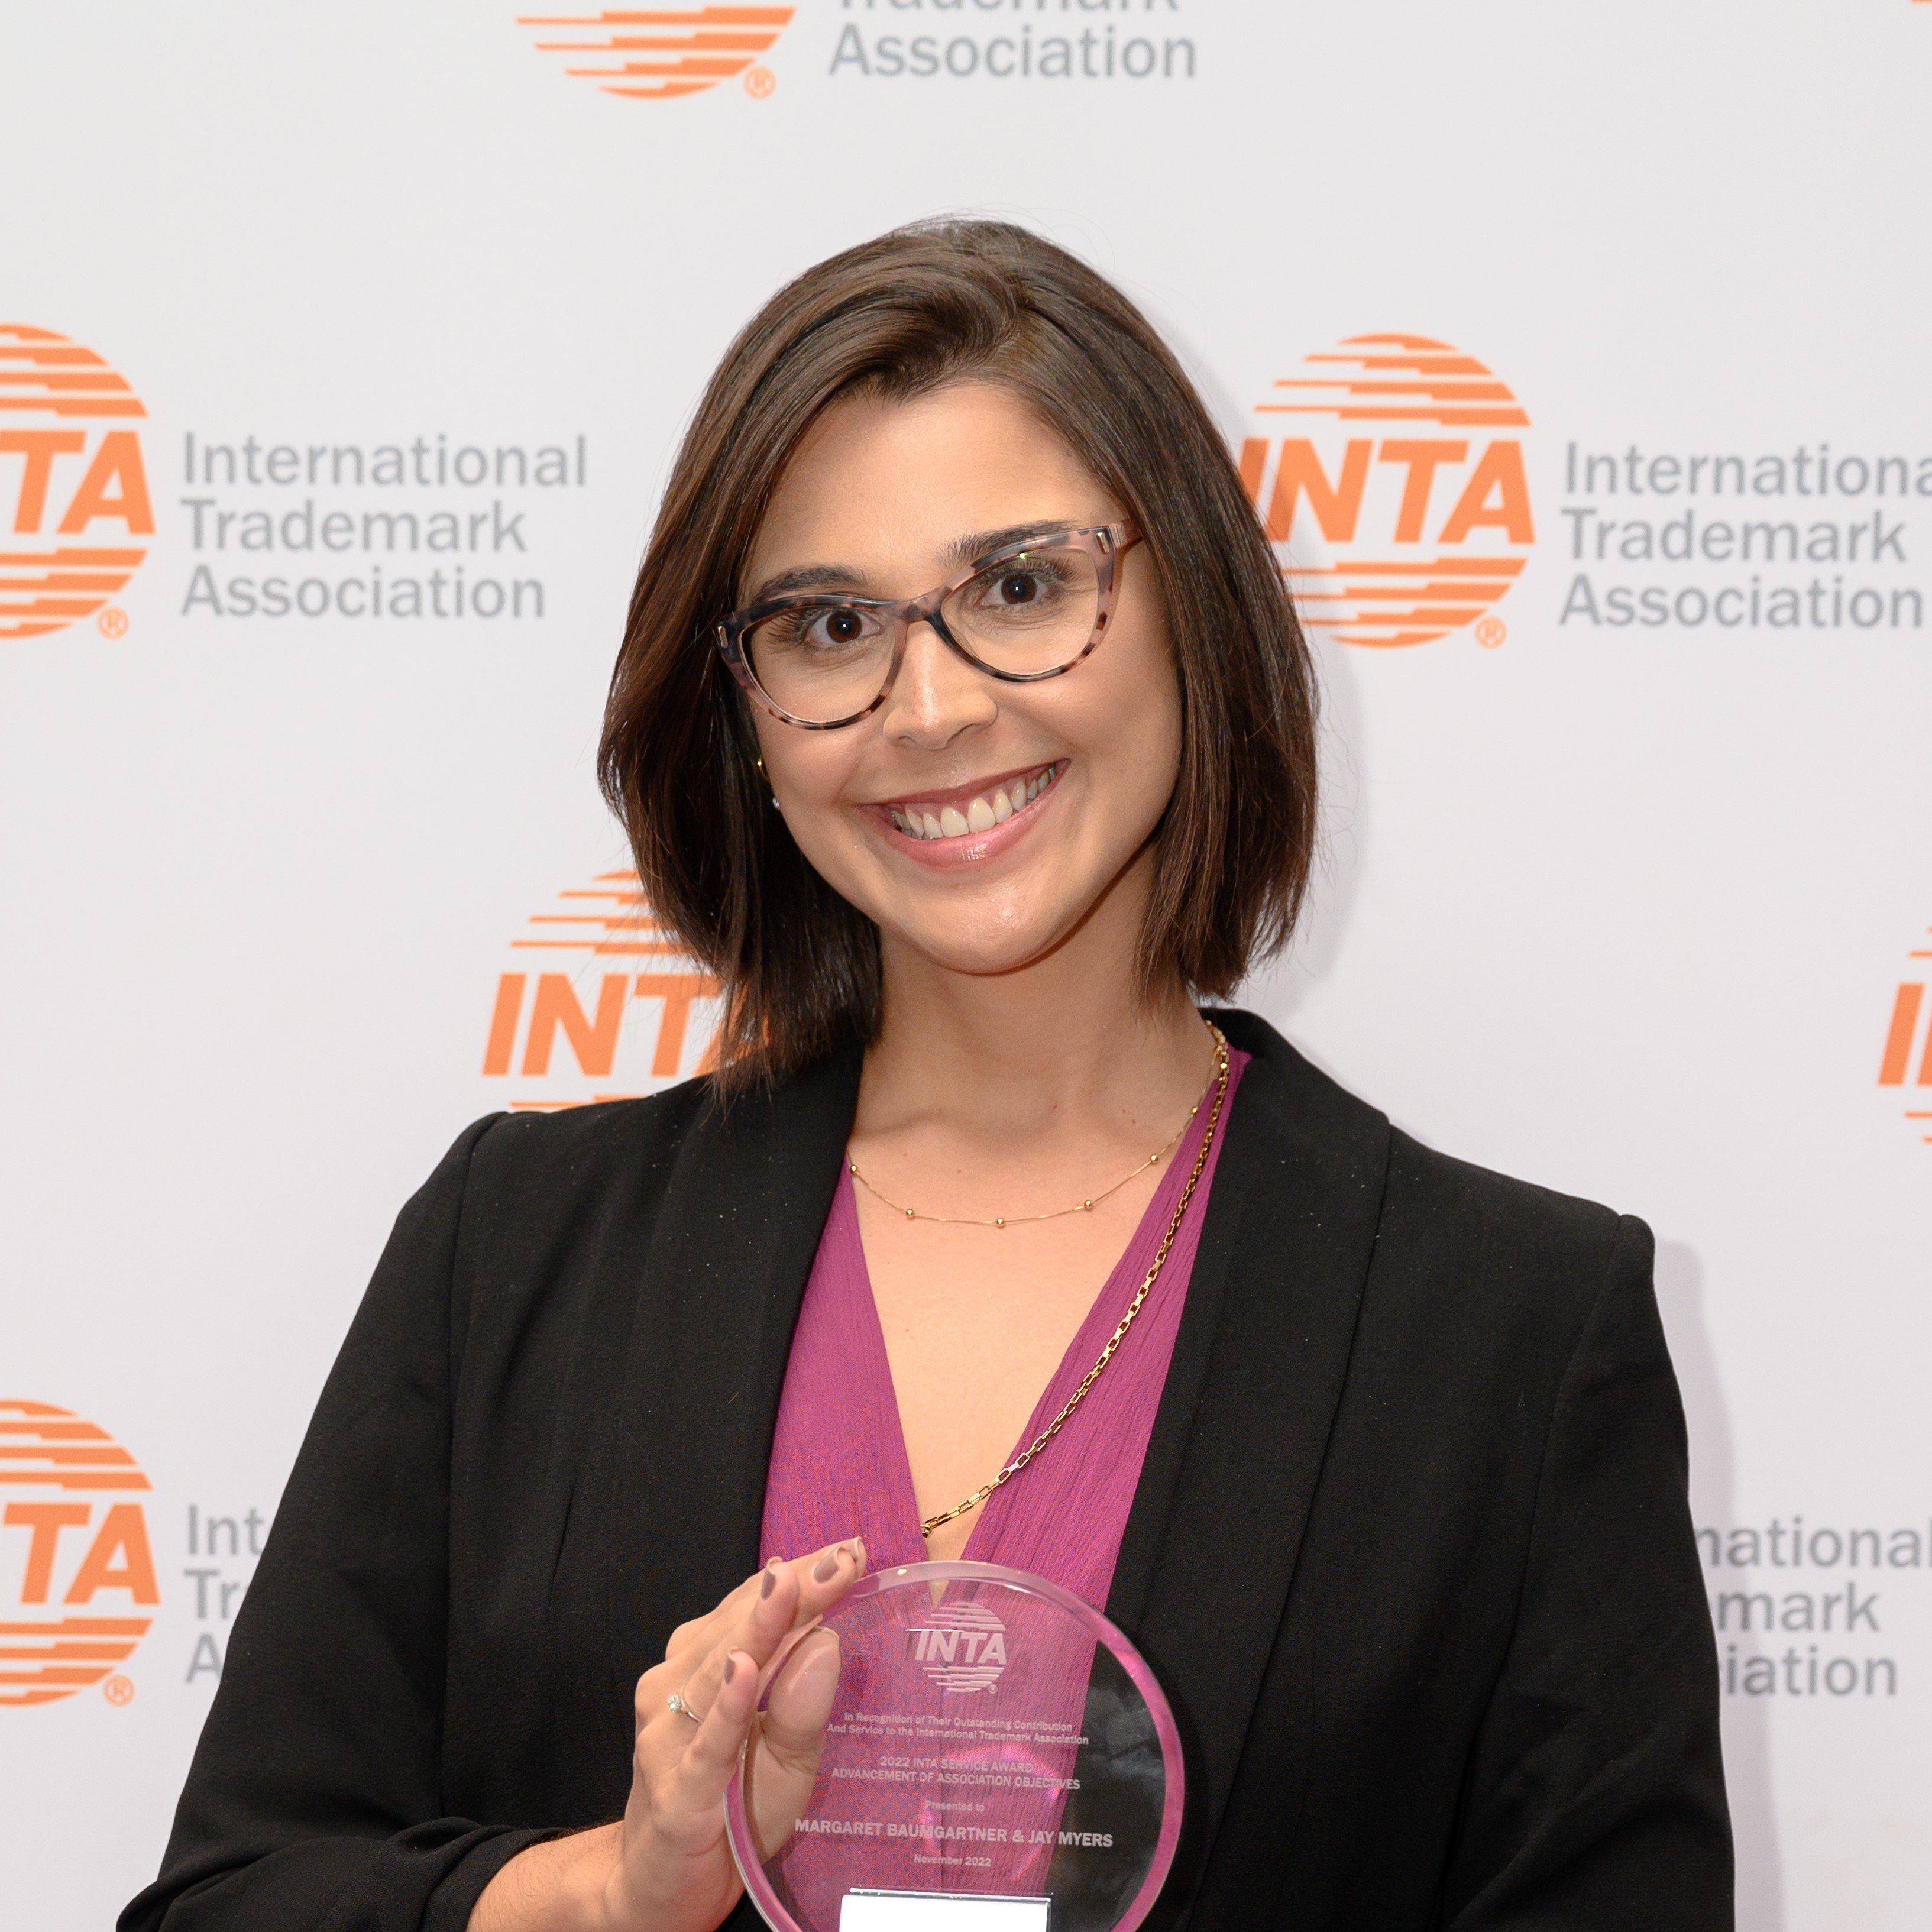 Isabella-award-INTA